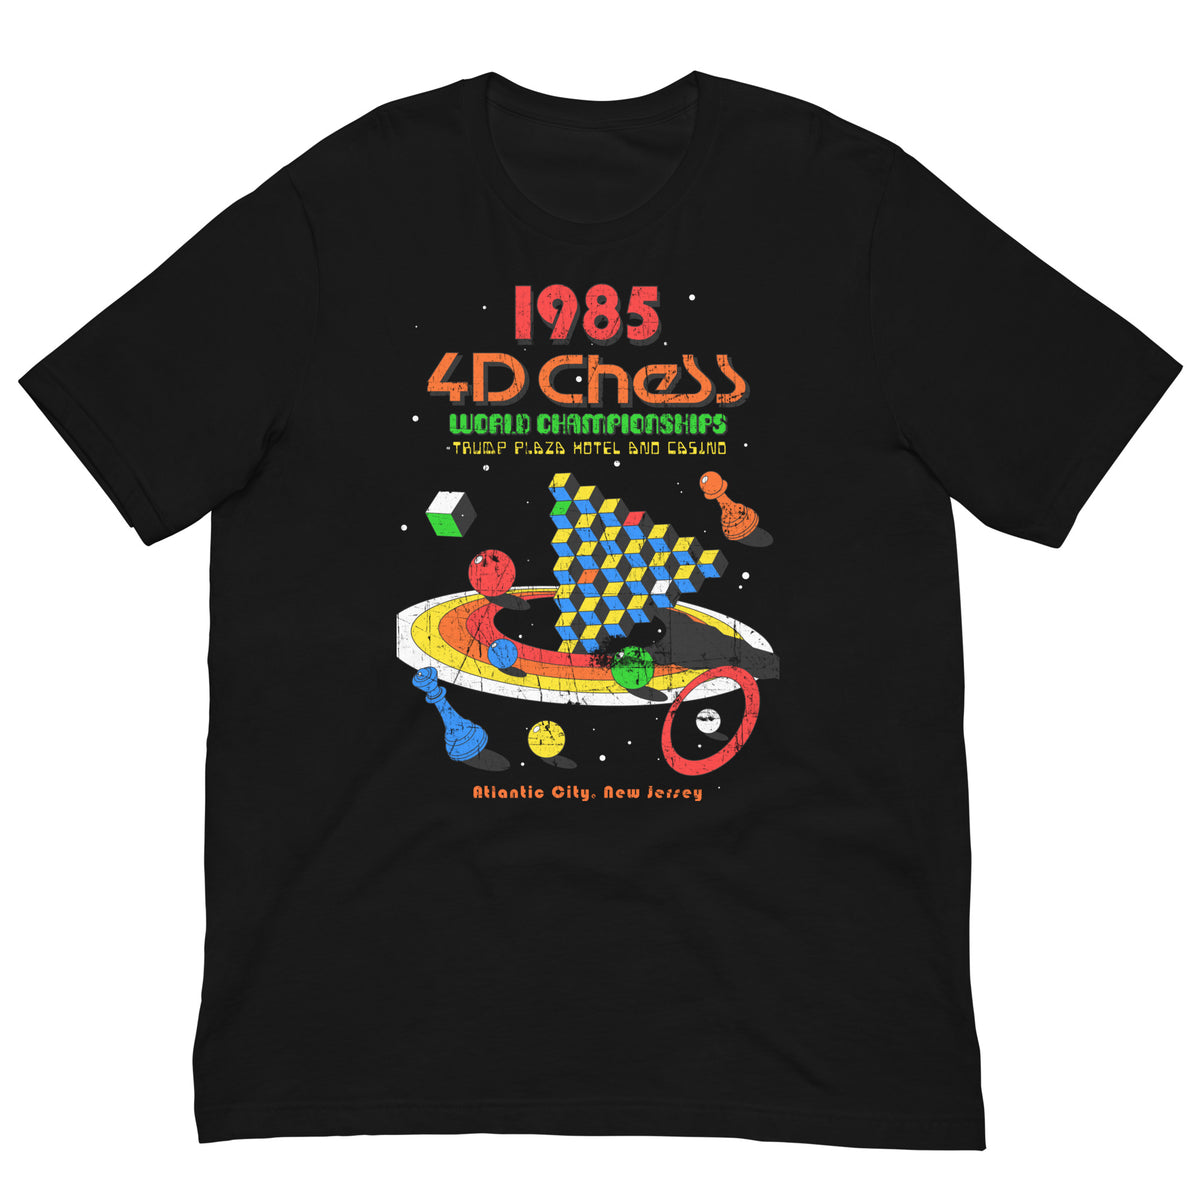 4D Chess Championship T-Shirt